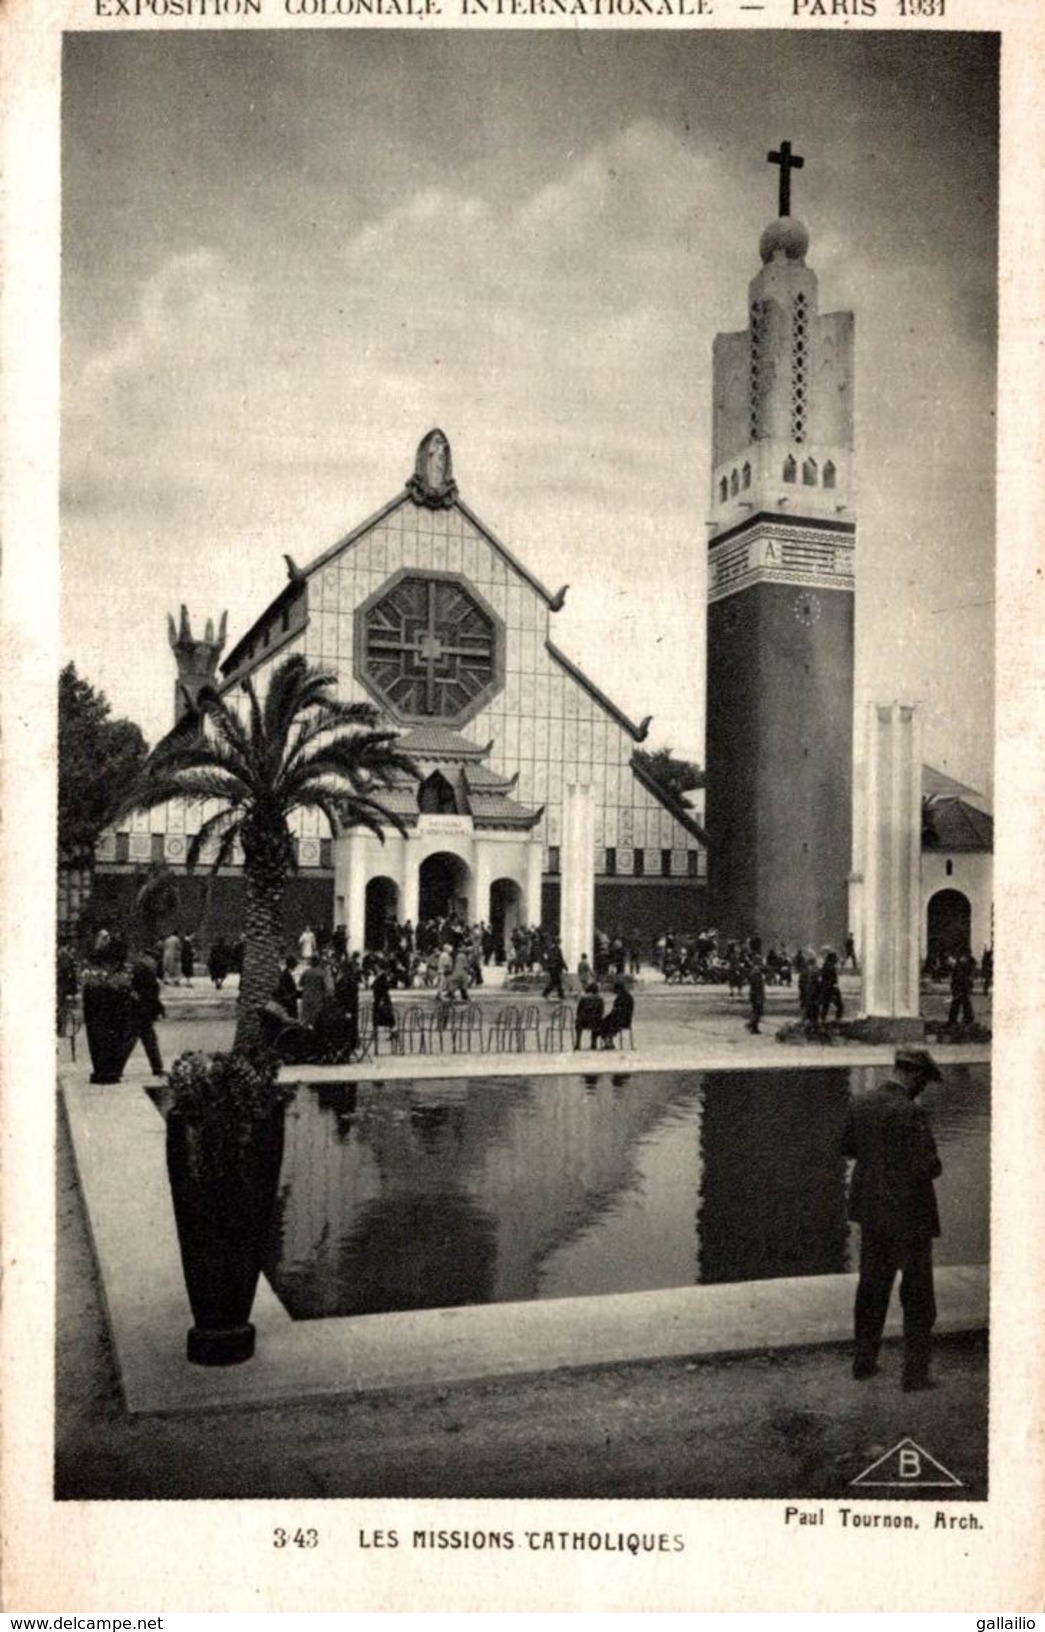 PARIS EXPOSITION COLONIALE 1931 LES MISSIONS CATHOLIQUES - Expositions